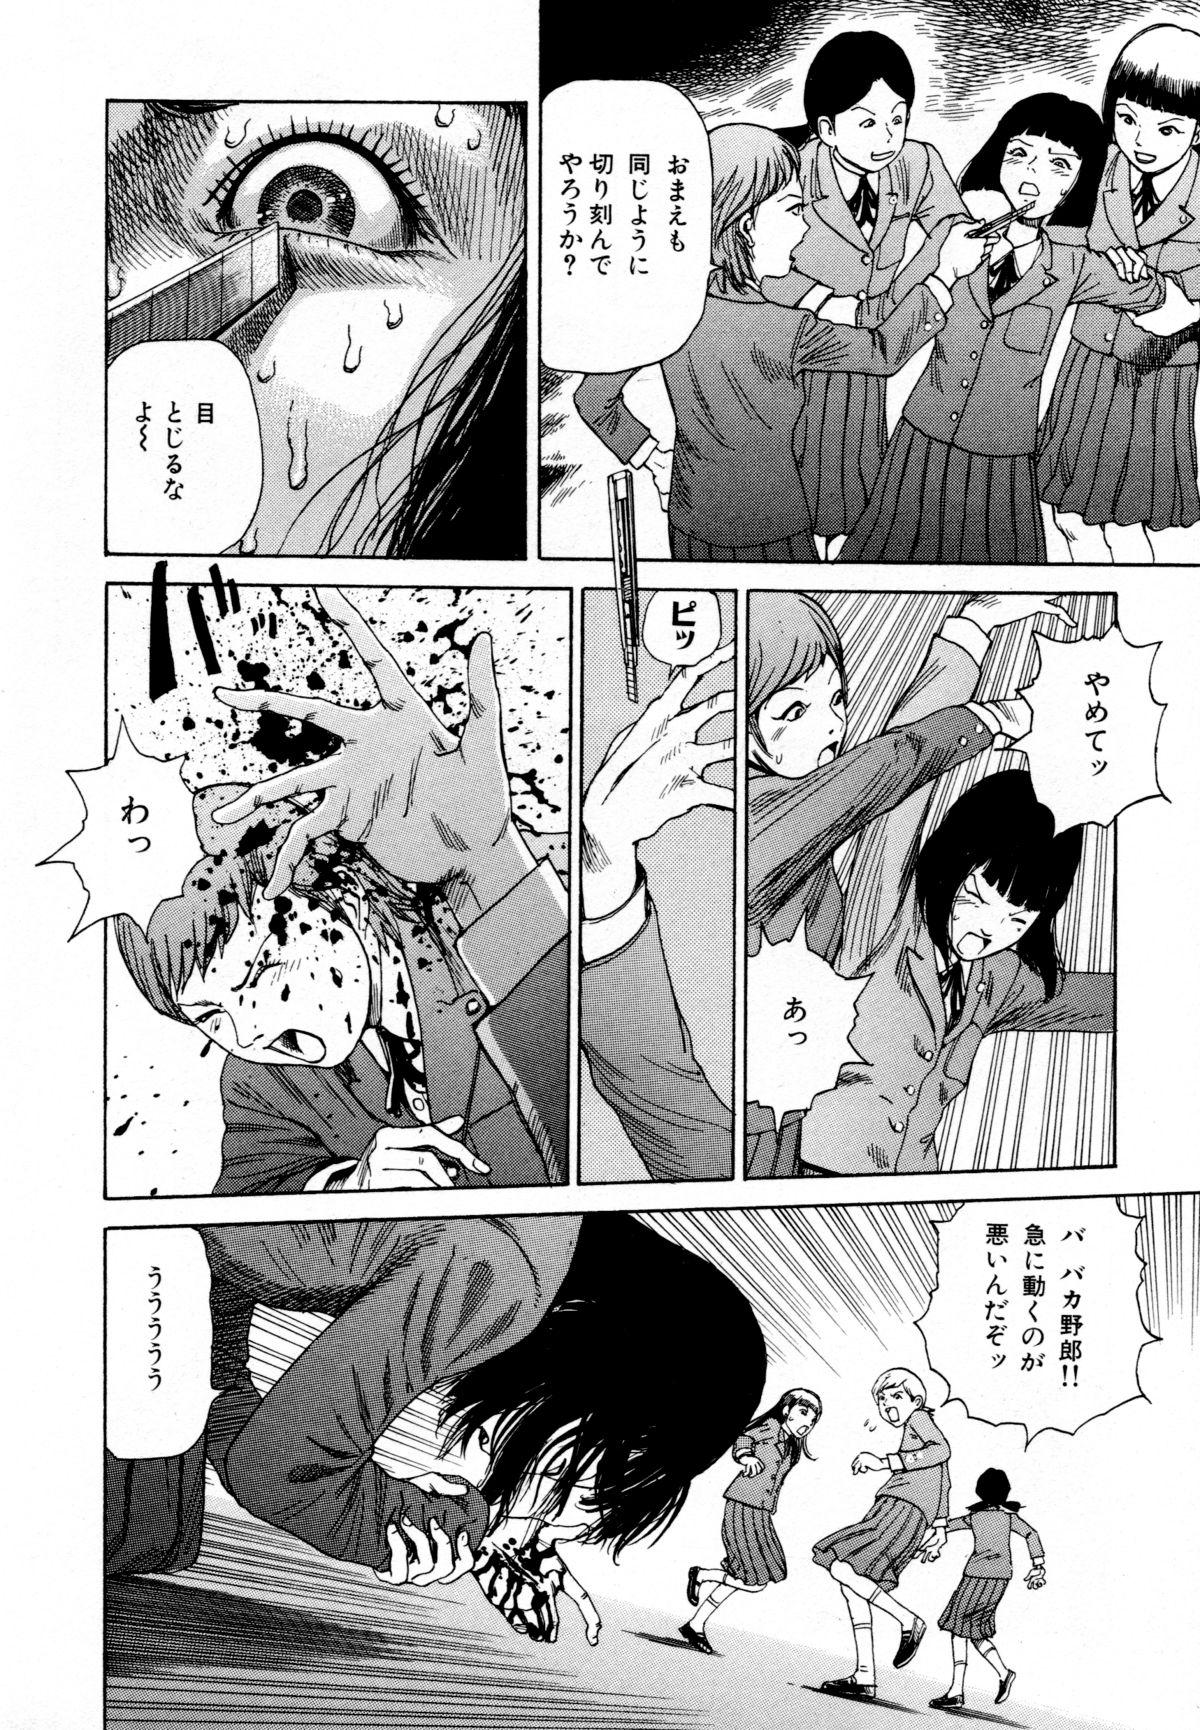 Arijigoku vs Barabara Shoujo - Antlion vs BaraBara Girl 77